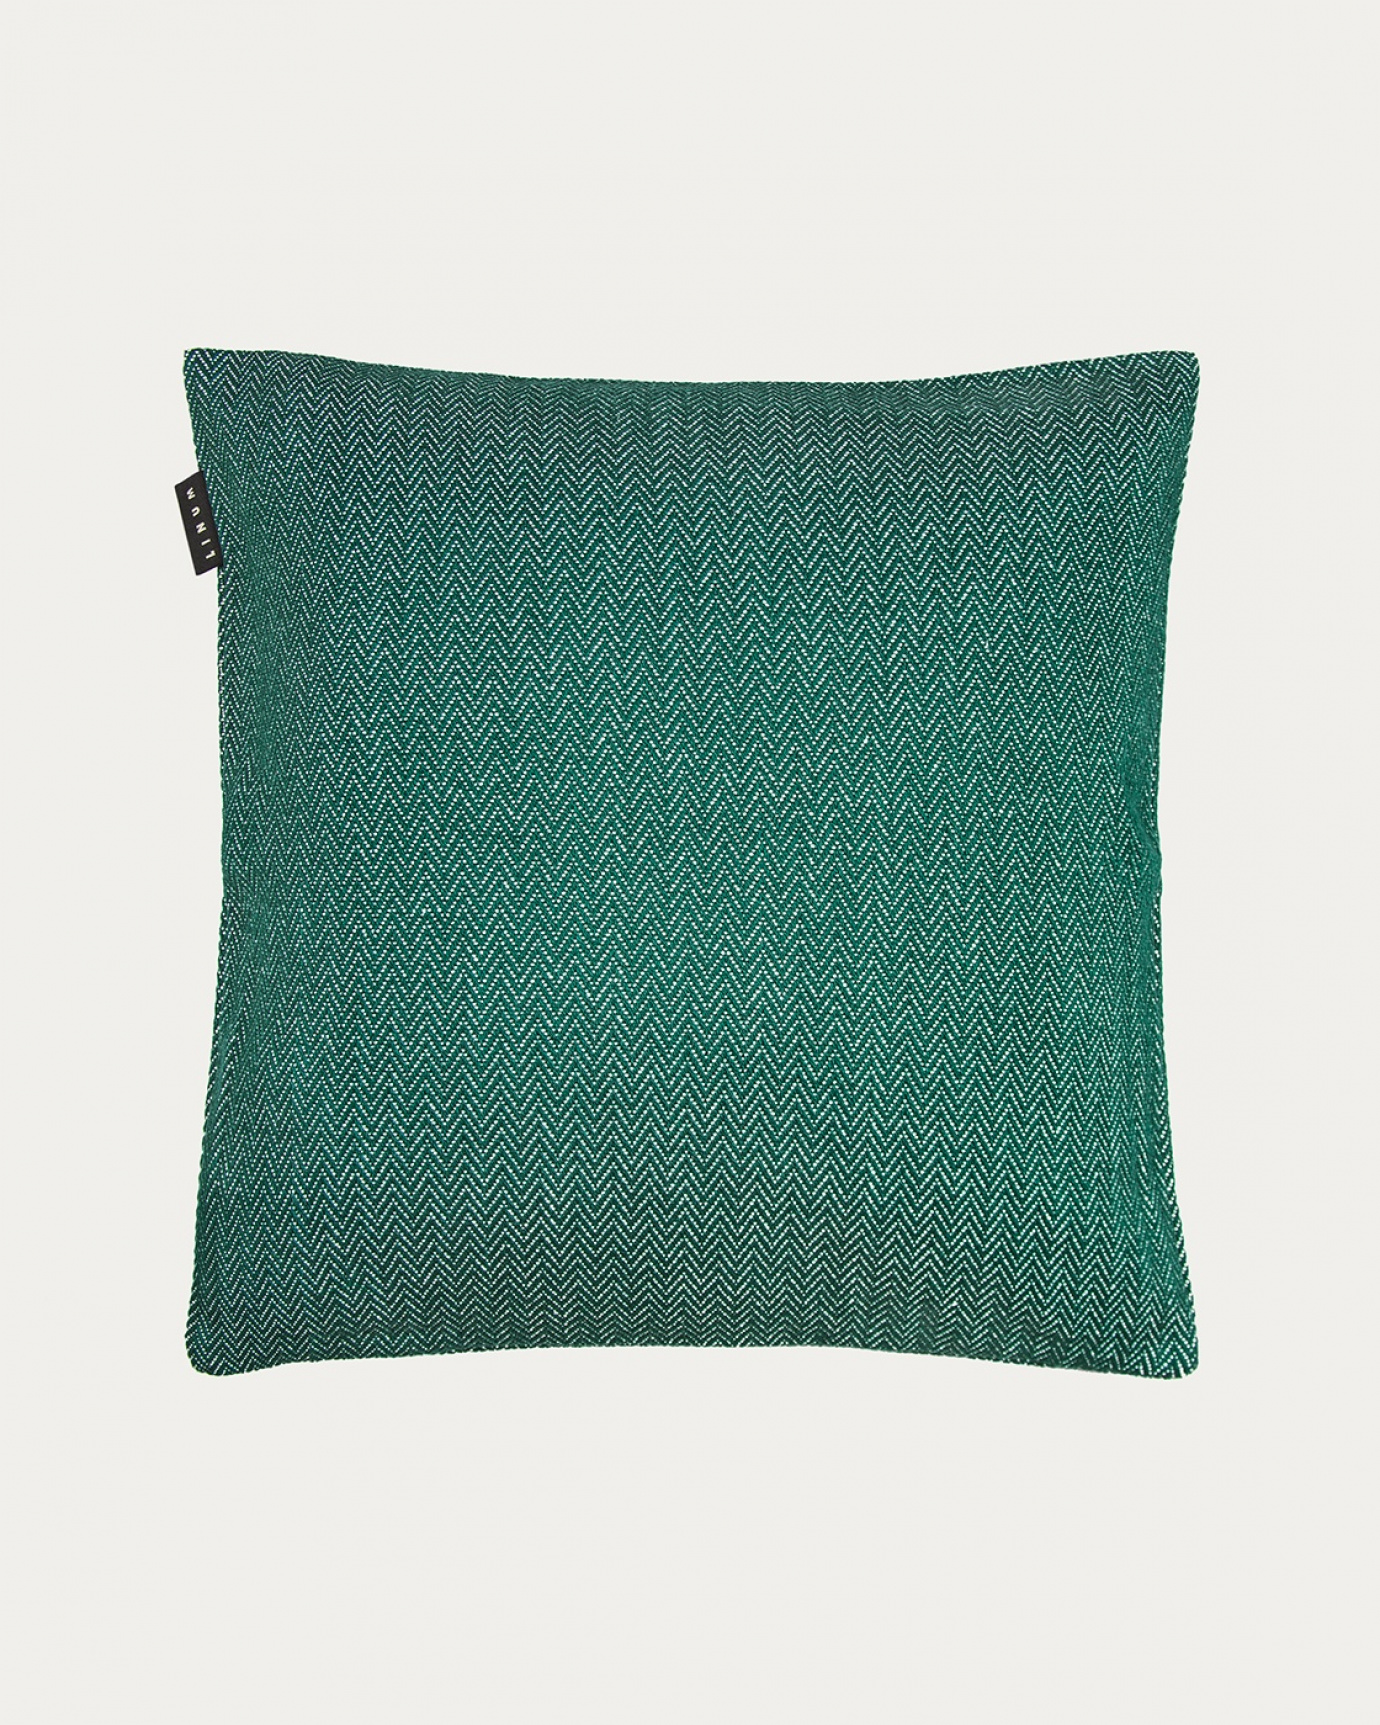 Image du produit housse de coussin SHEPARD vert émeraude intense en coton doux avec un motif à chevrons discret de LINUM DESIGN. Taille 50 x 50 cm.